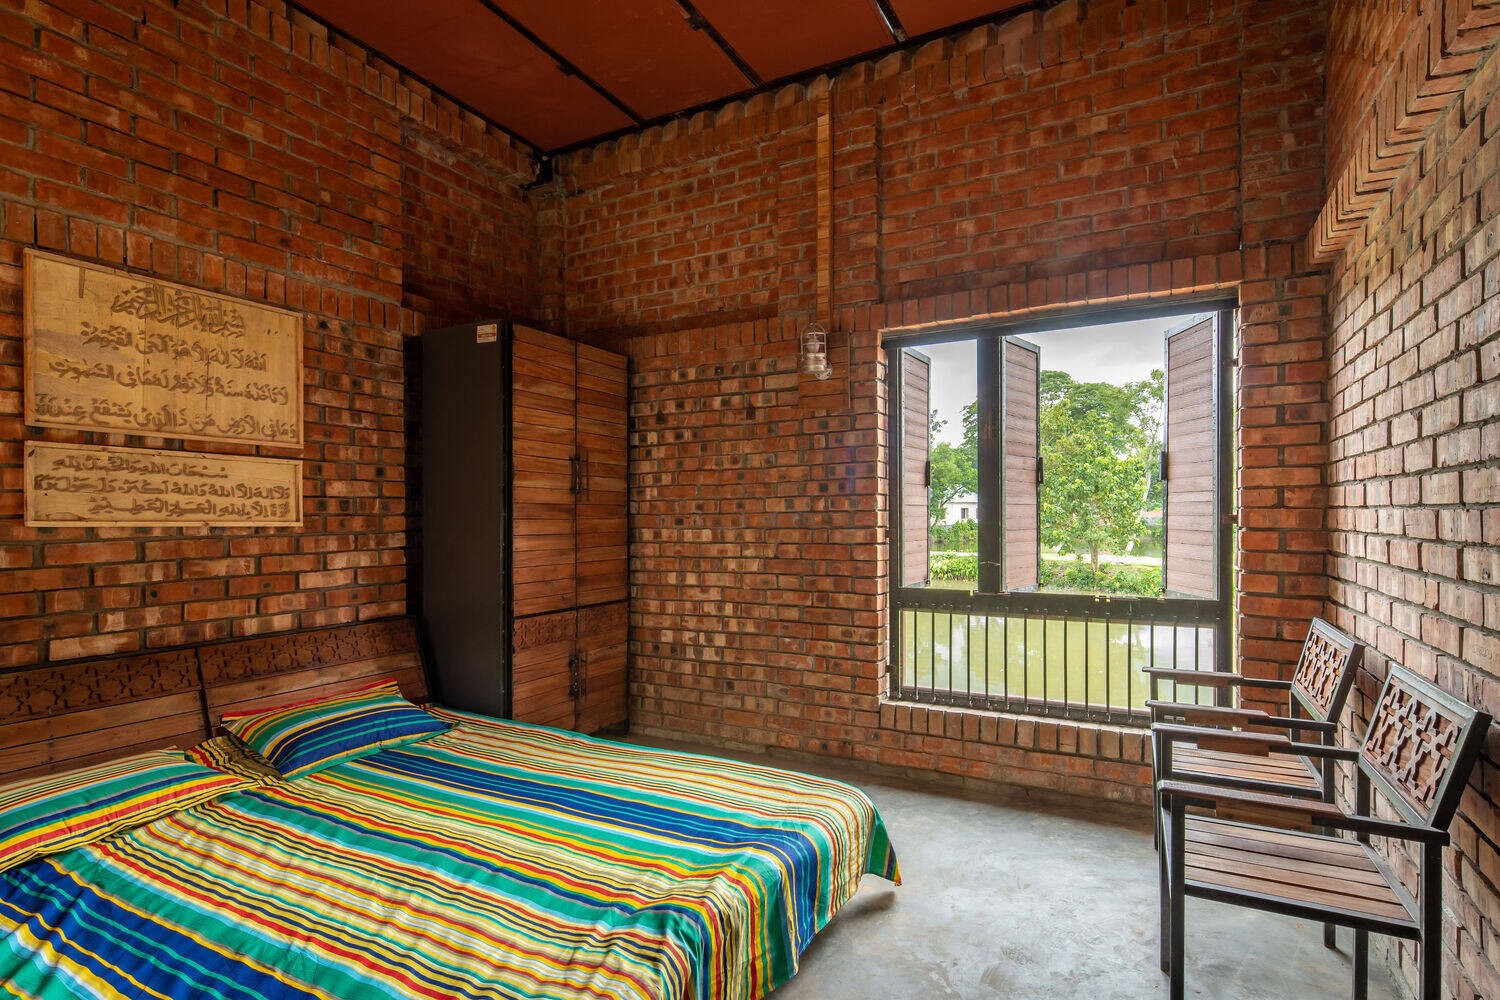 
Cửa phòng làm bằng gỗ, ngăn cách với hành lang vừa đảm bảo riêng tư, nhưng khi cần vẫn có thể mở rộng để không khí và ánh sáng lưu thông vào căn phòng
